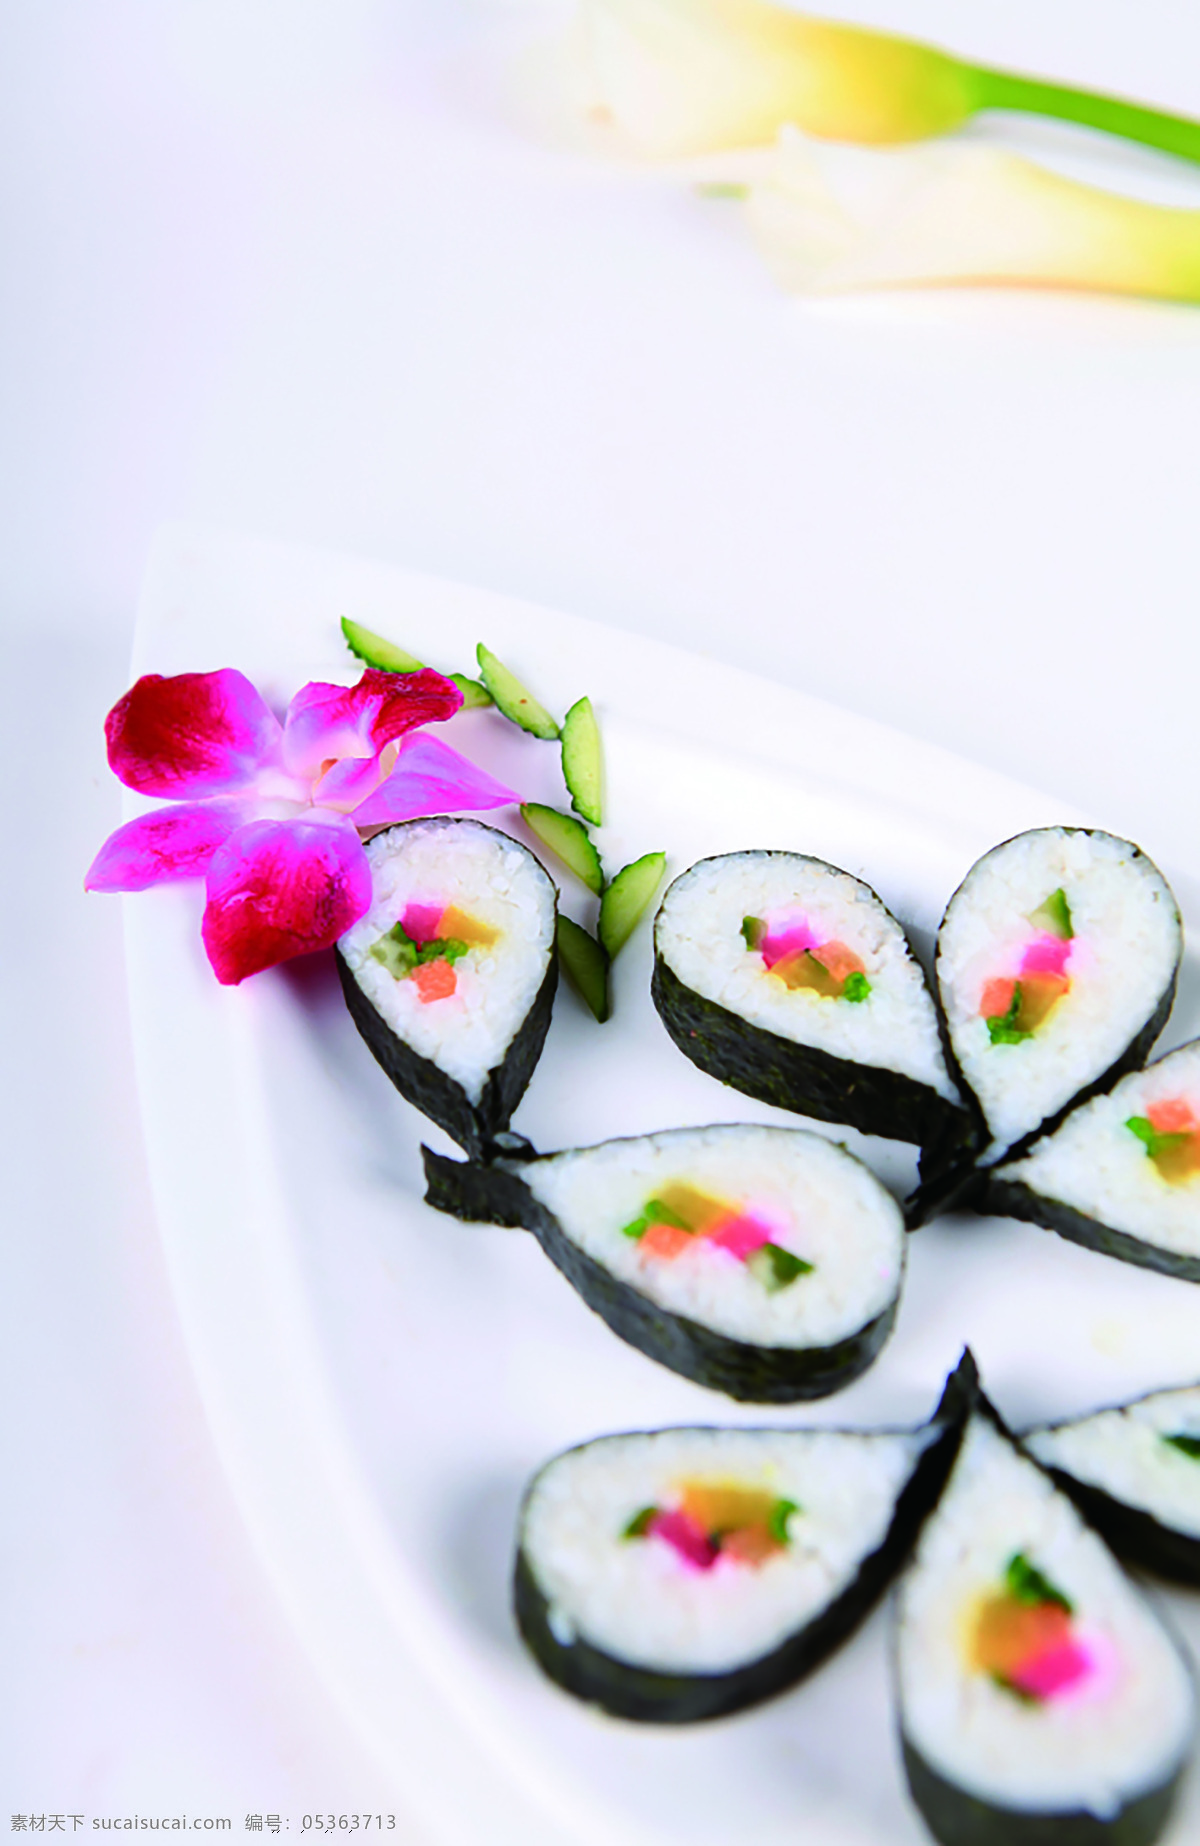 紫菜包饭 美食图片 美食的图片 食物的图片 东方美食图片 海苔包饭 日本料理 餐饮美食